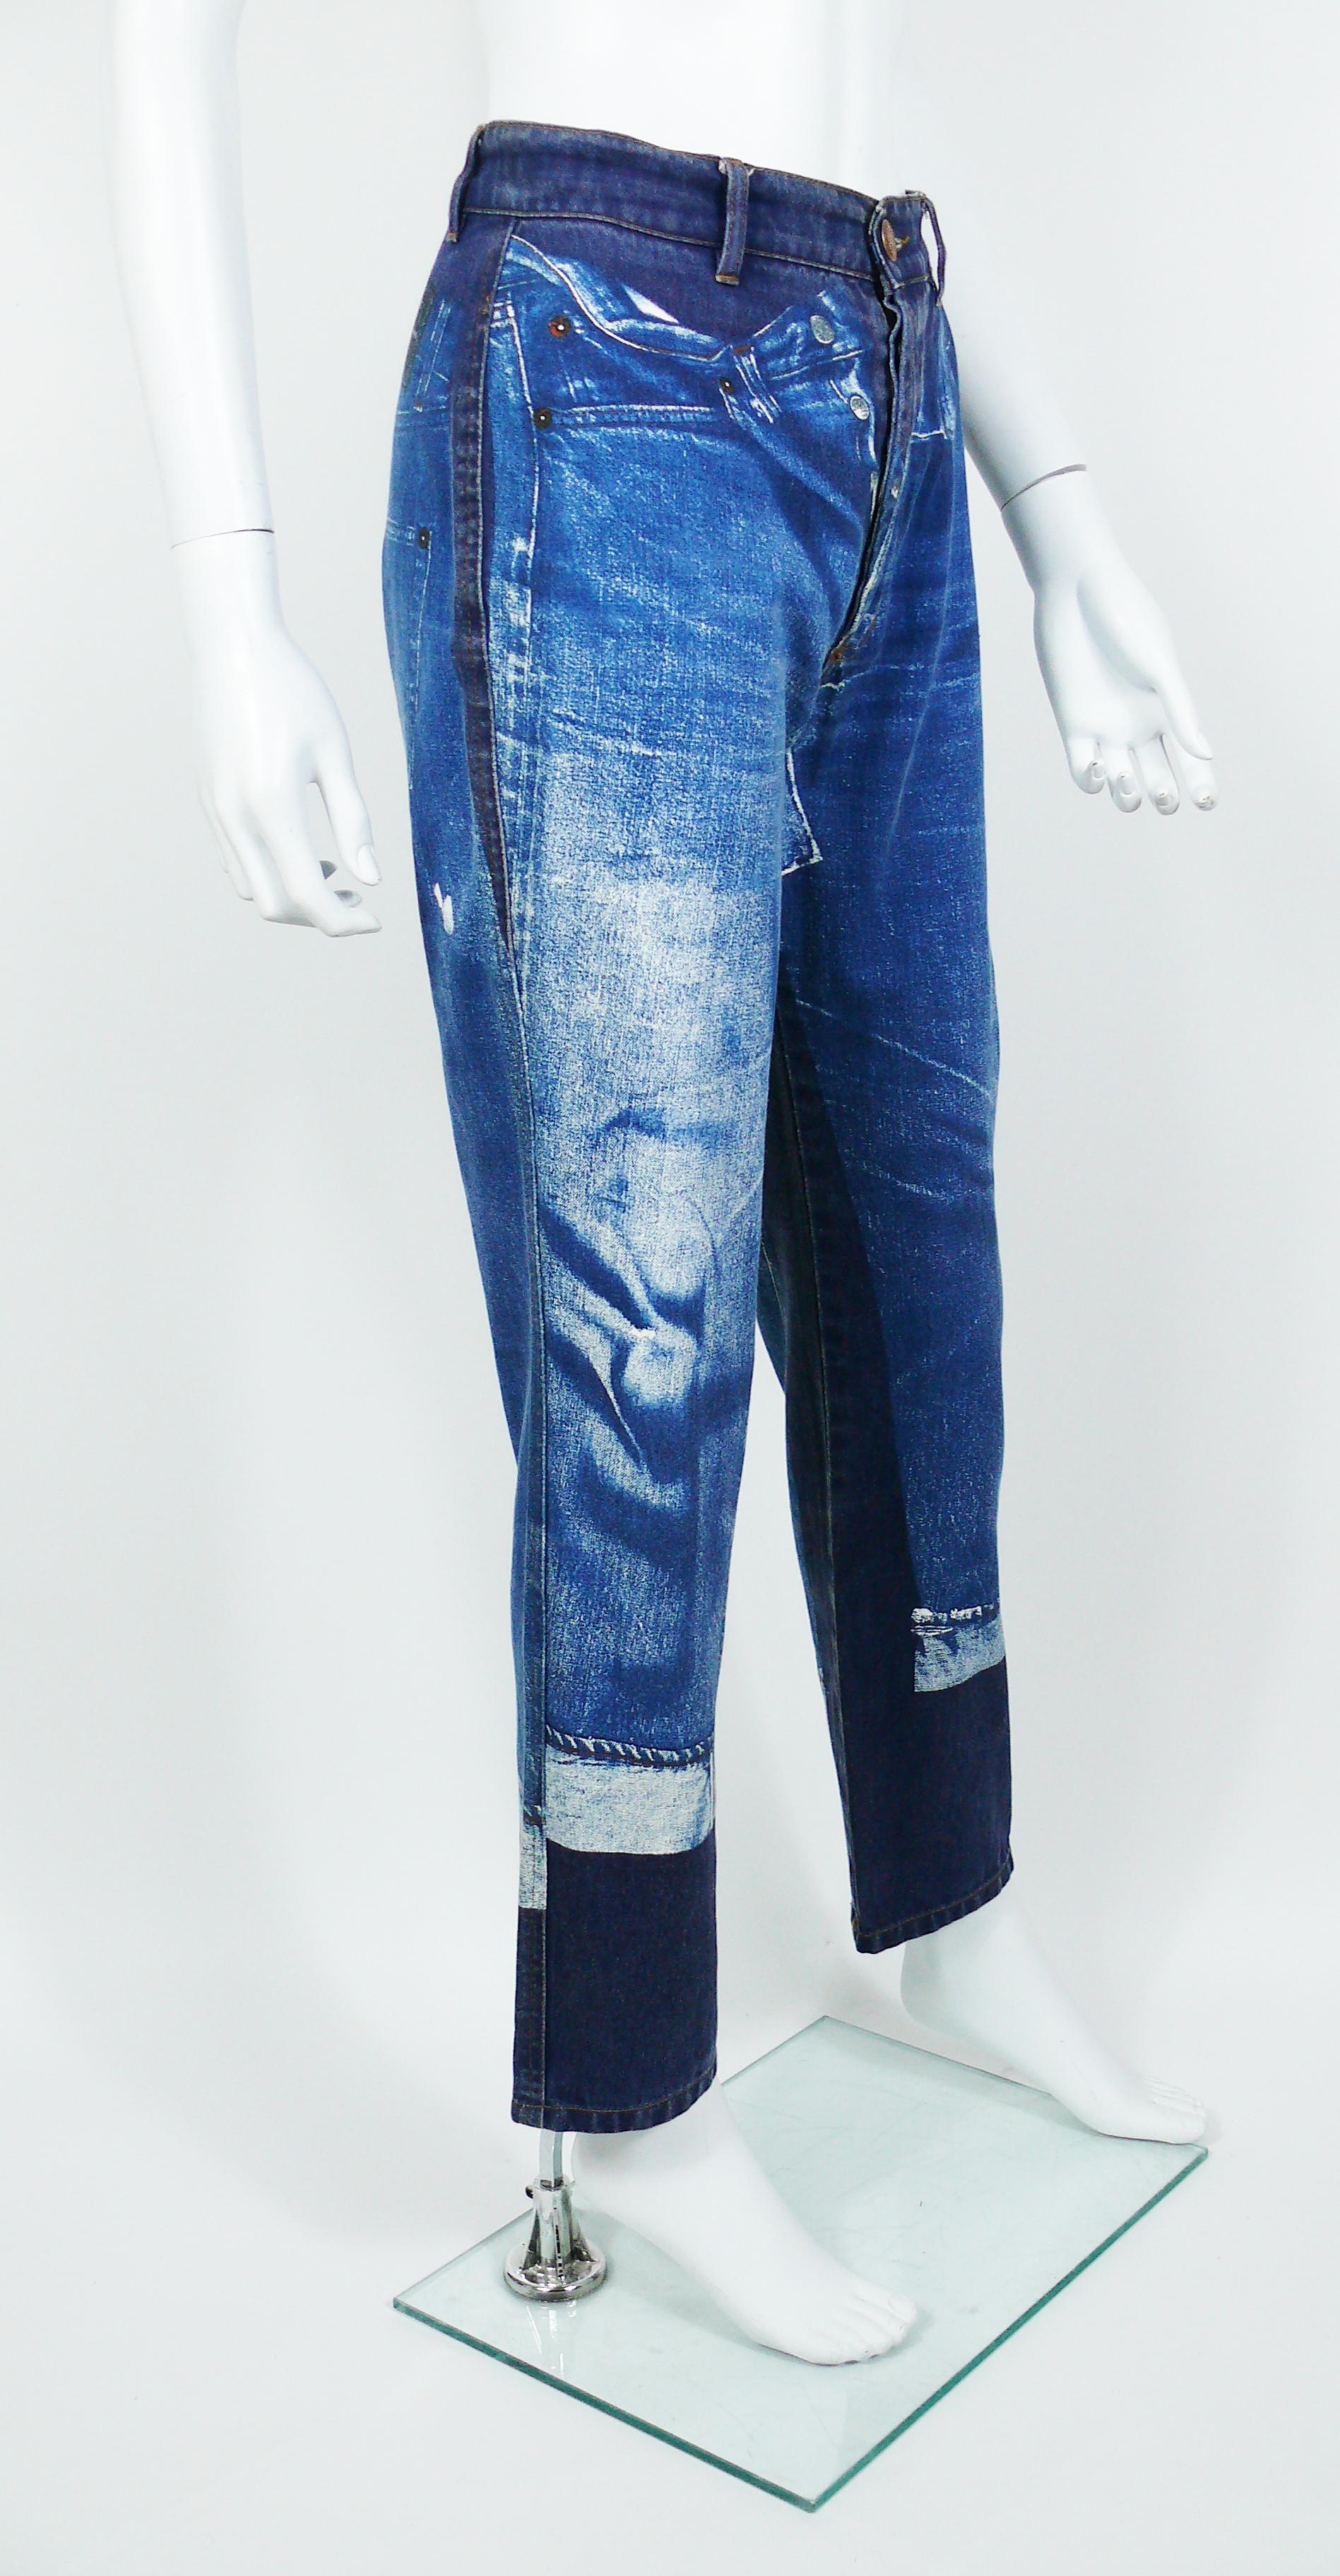 Blue Jean Paul Gaultier Vintage Trompe L'oeil Denim Pants Trousers